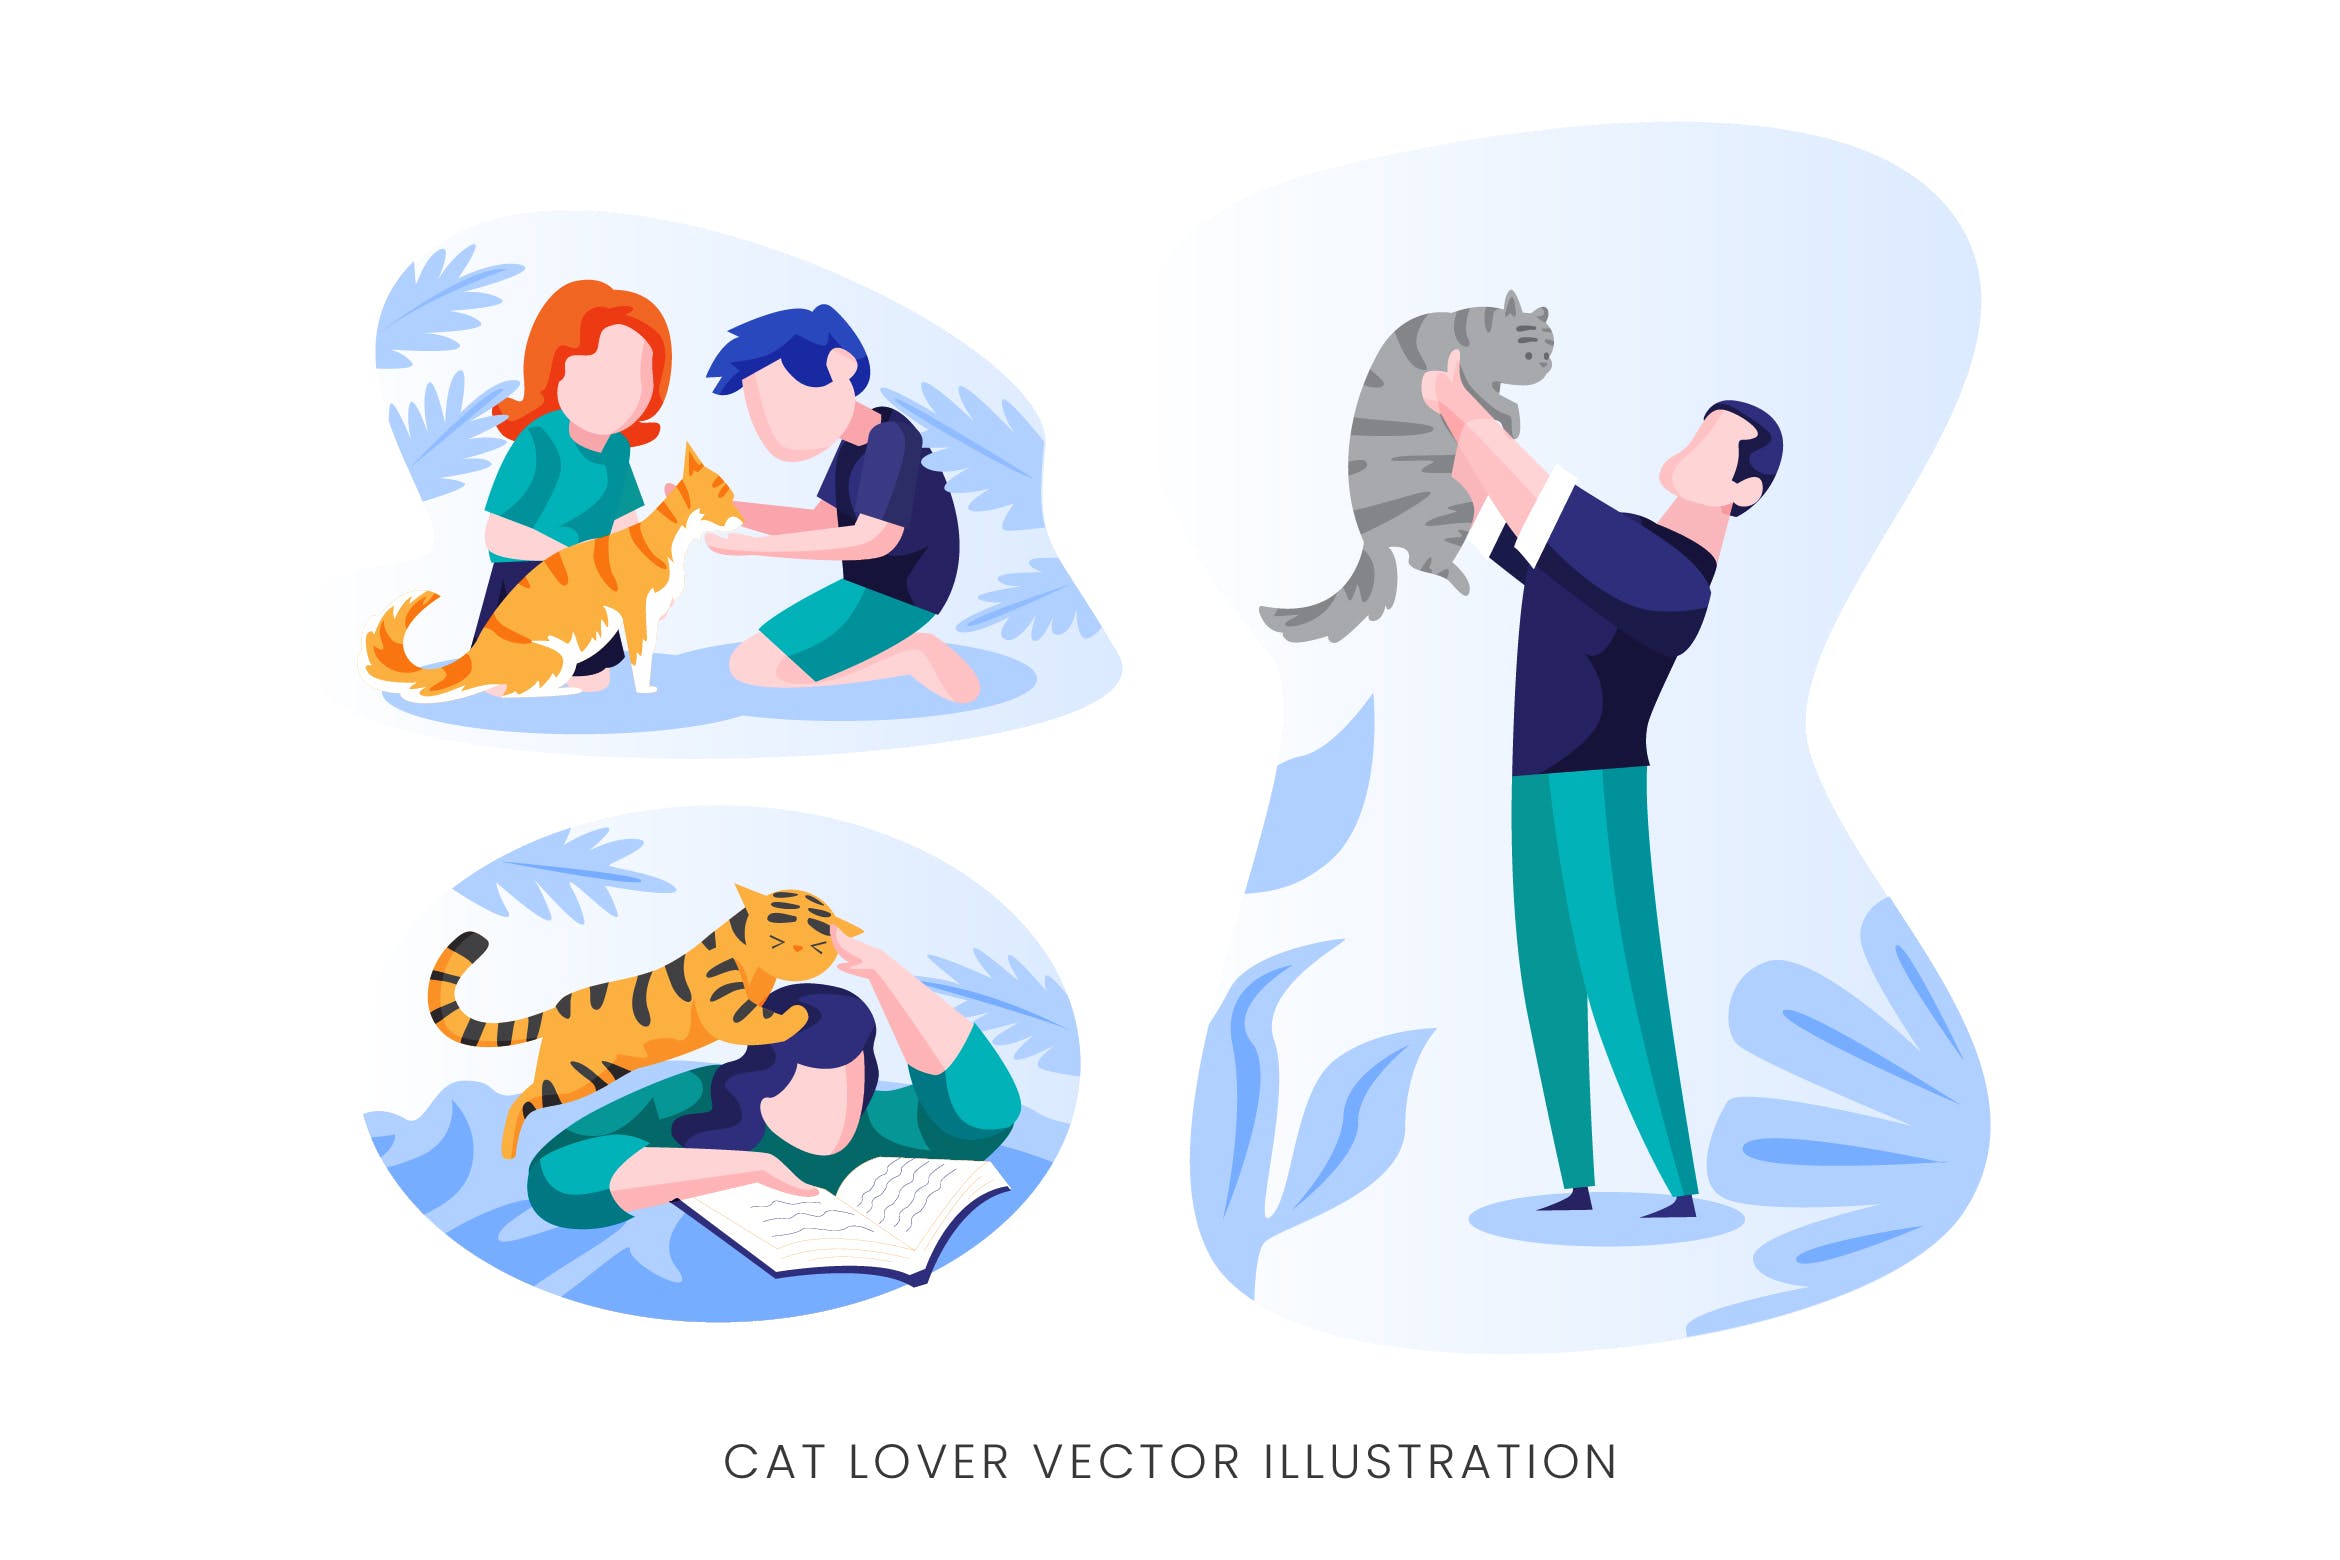 爱猫人士人物形象矢量手绘非凡图库精选设计素材 Cat Lover Vector Character Set插图